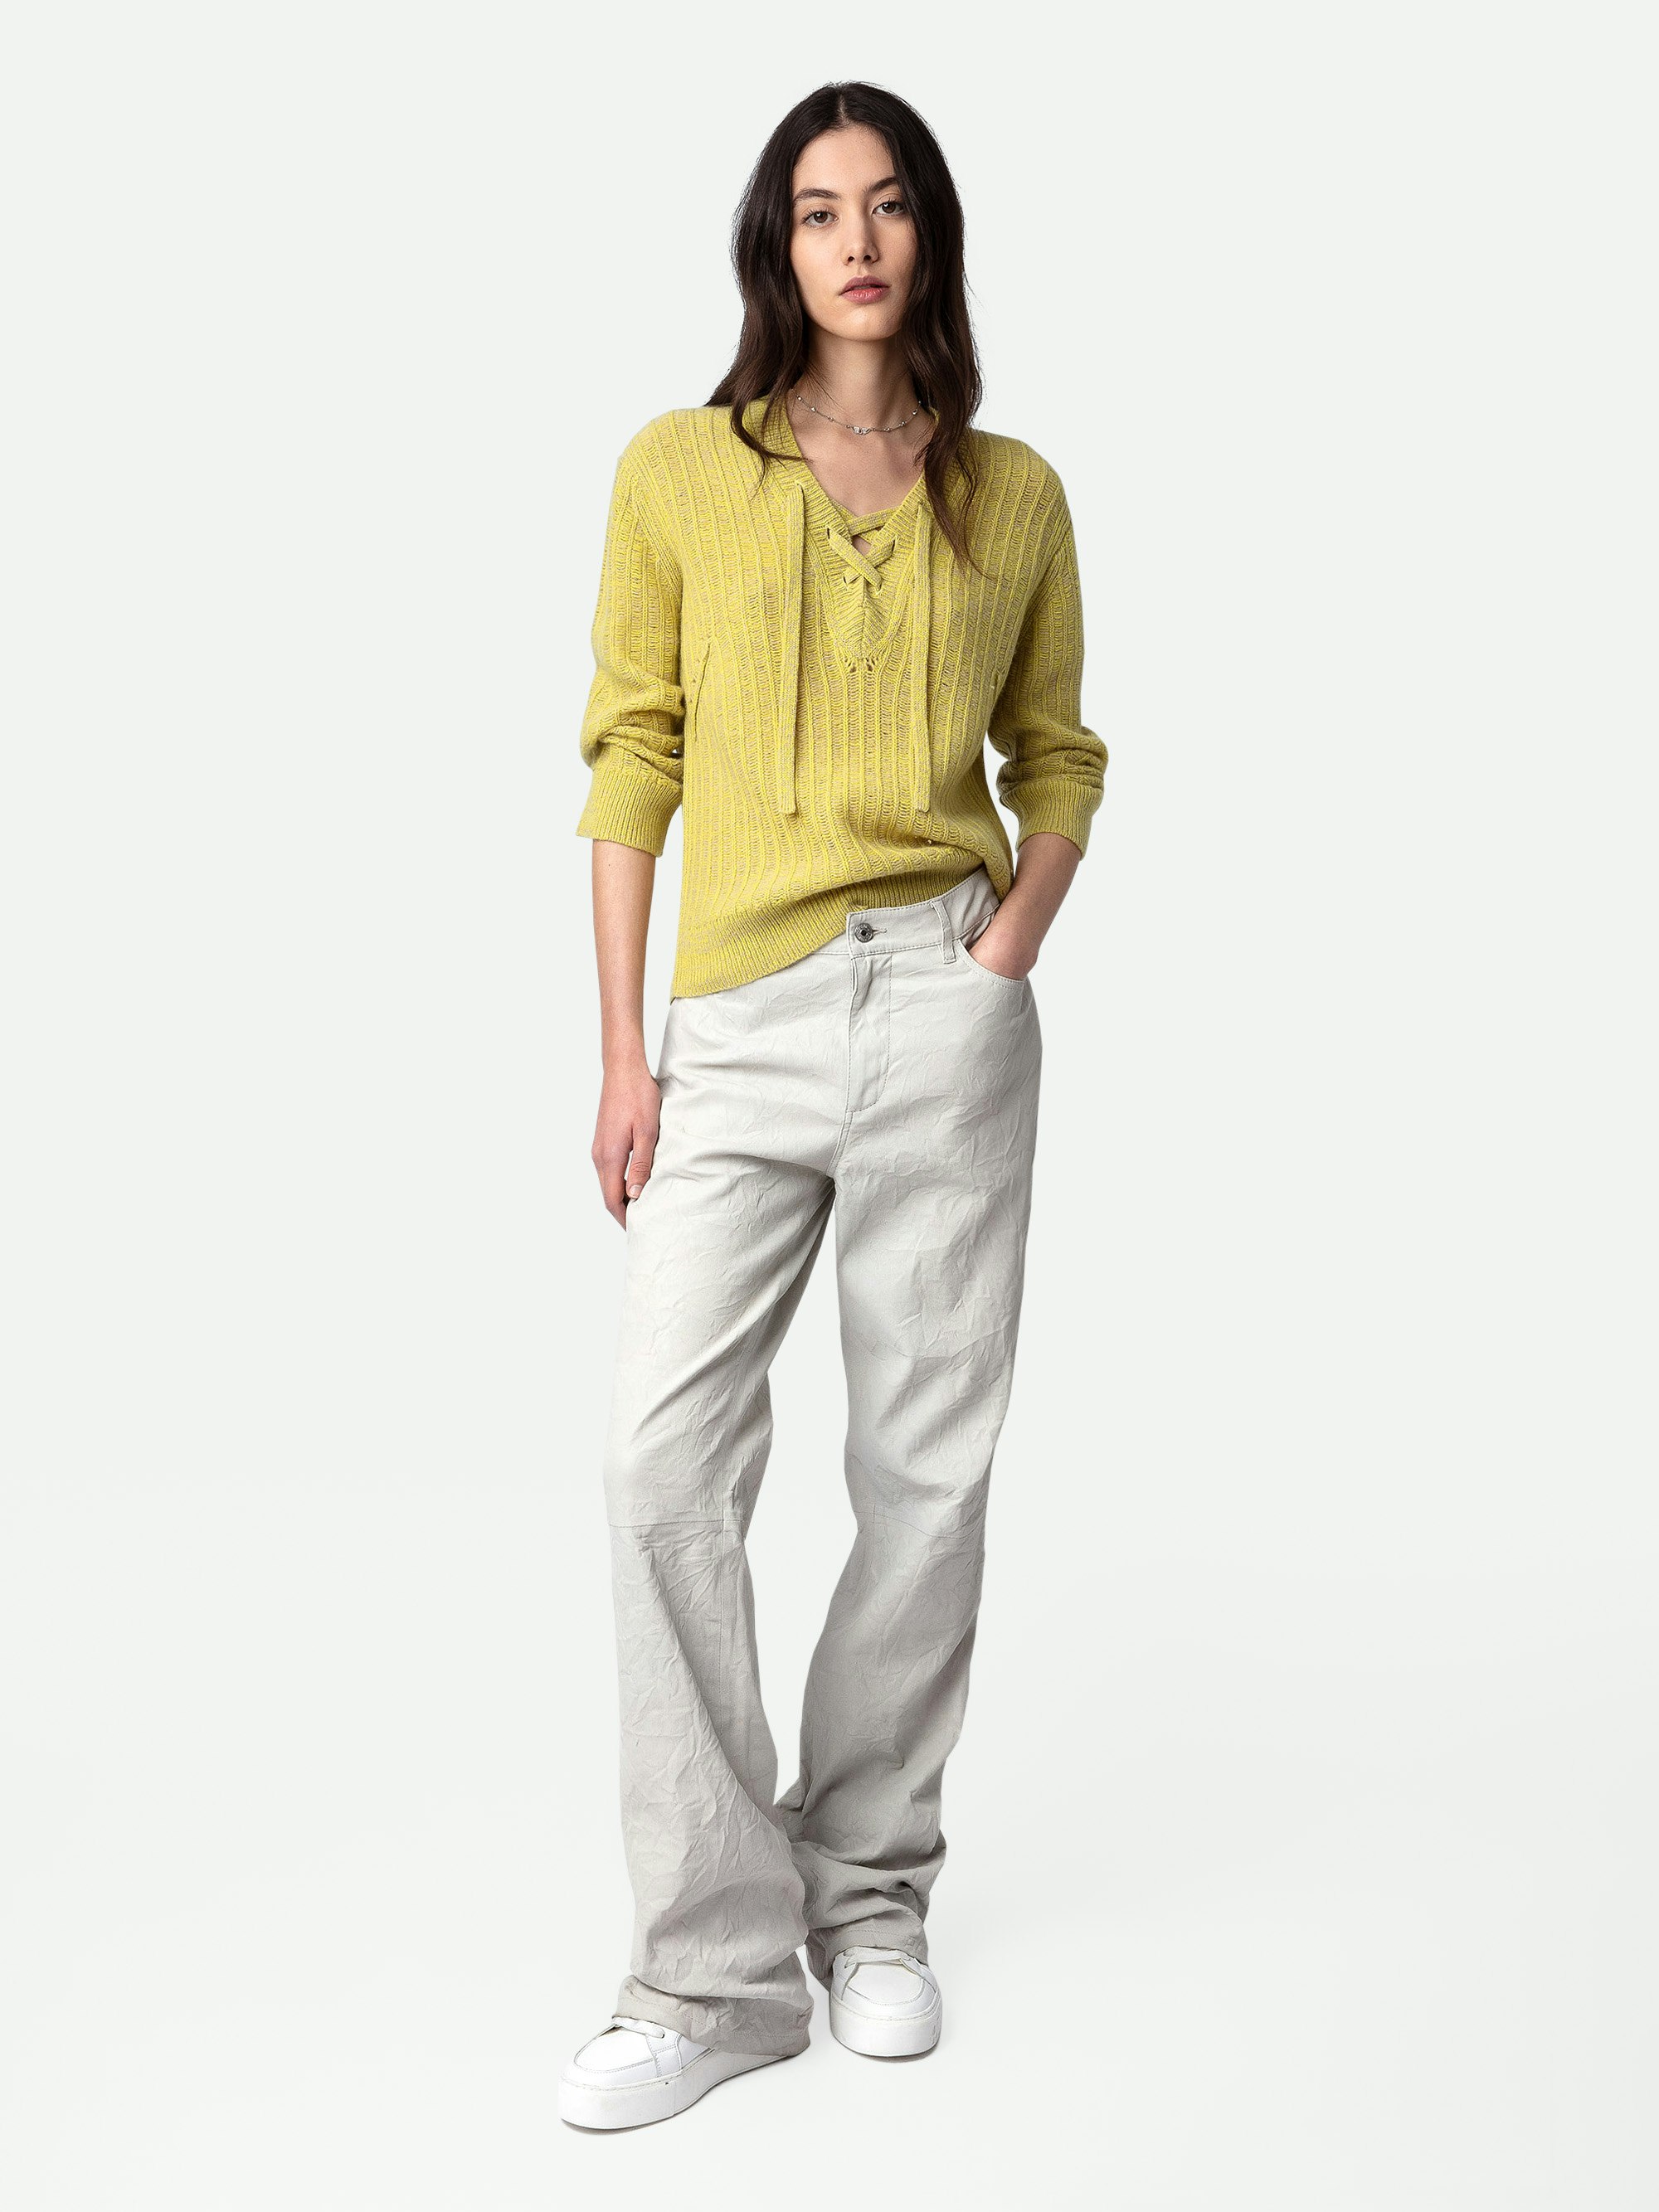 Jersey Fanny 100% Lana Merina - Jersey calado de 100% lana merina en color amarillo claro con mangas largas y cintas de ajuste.